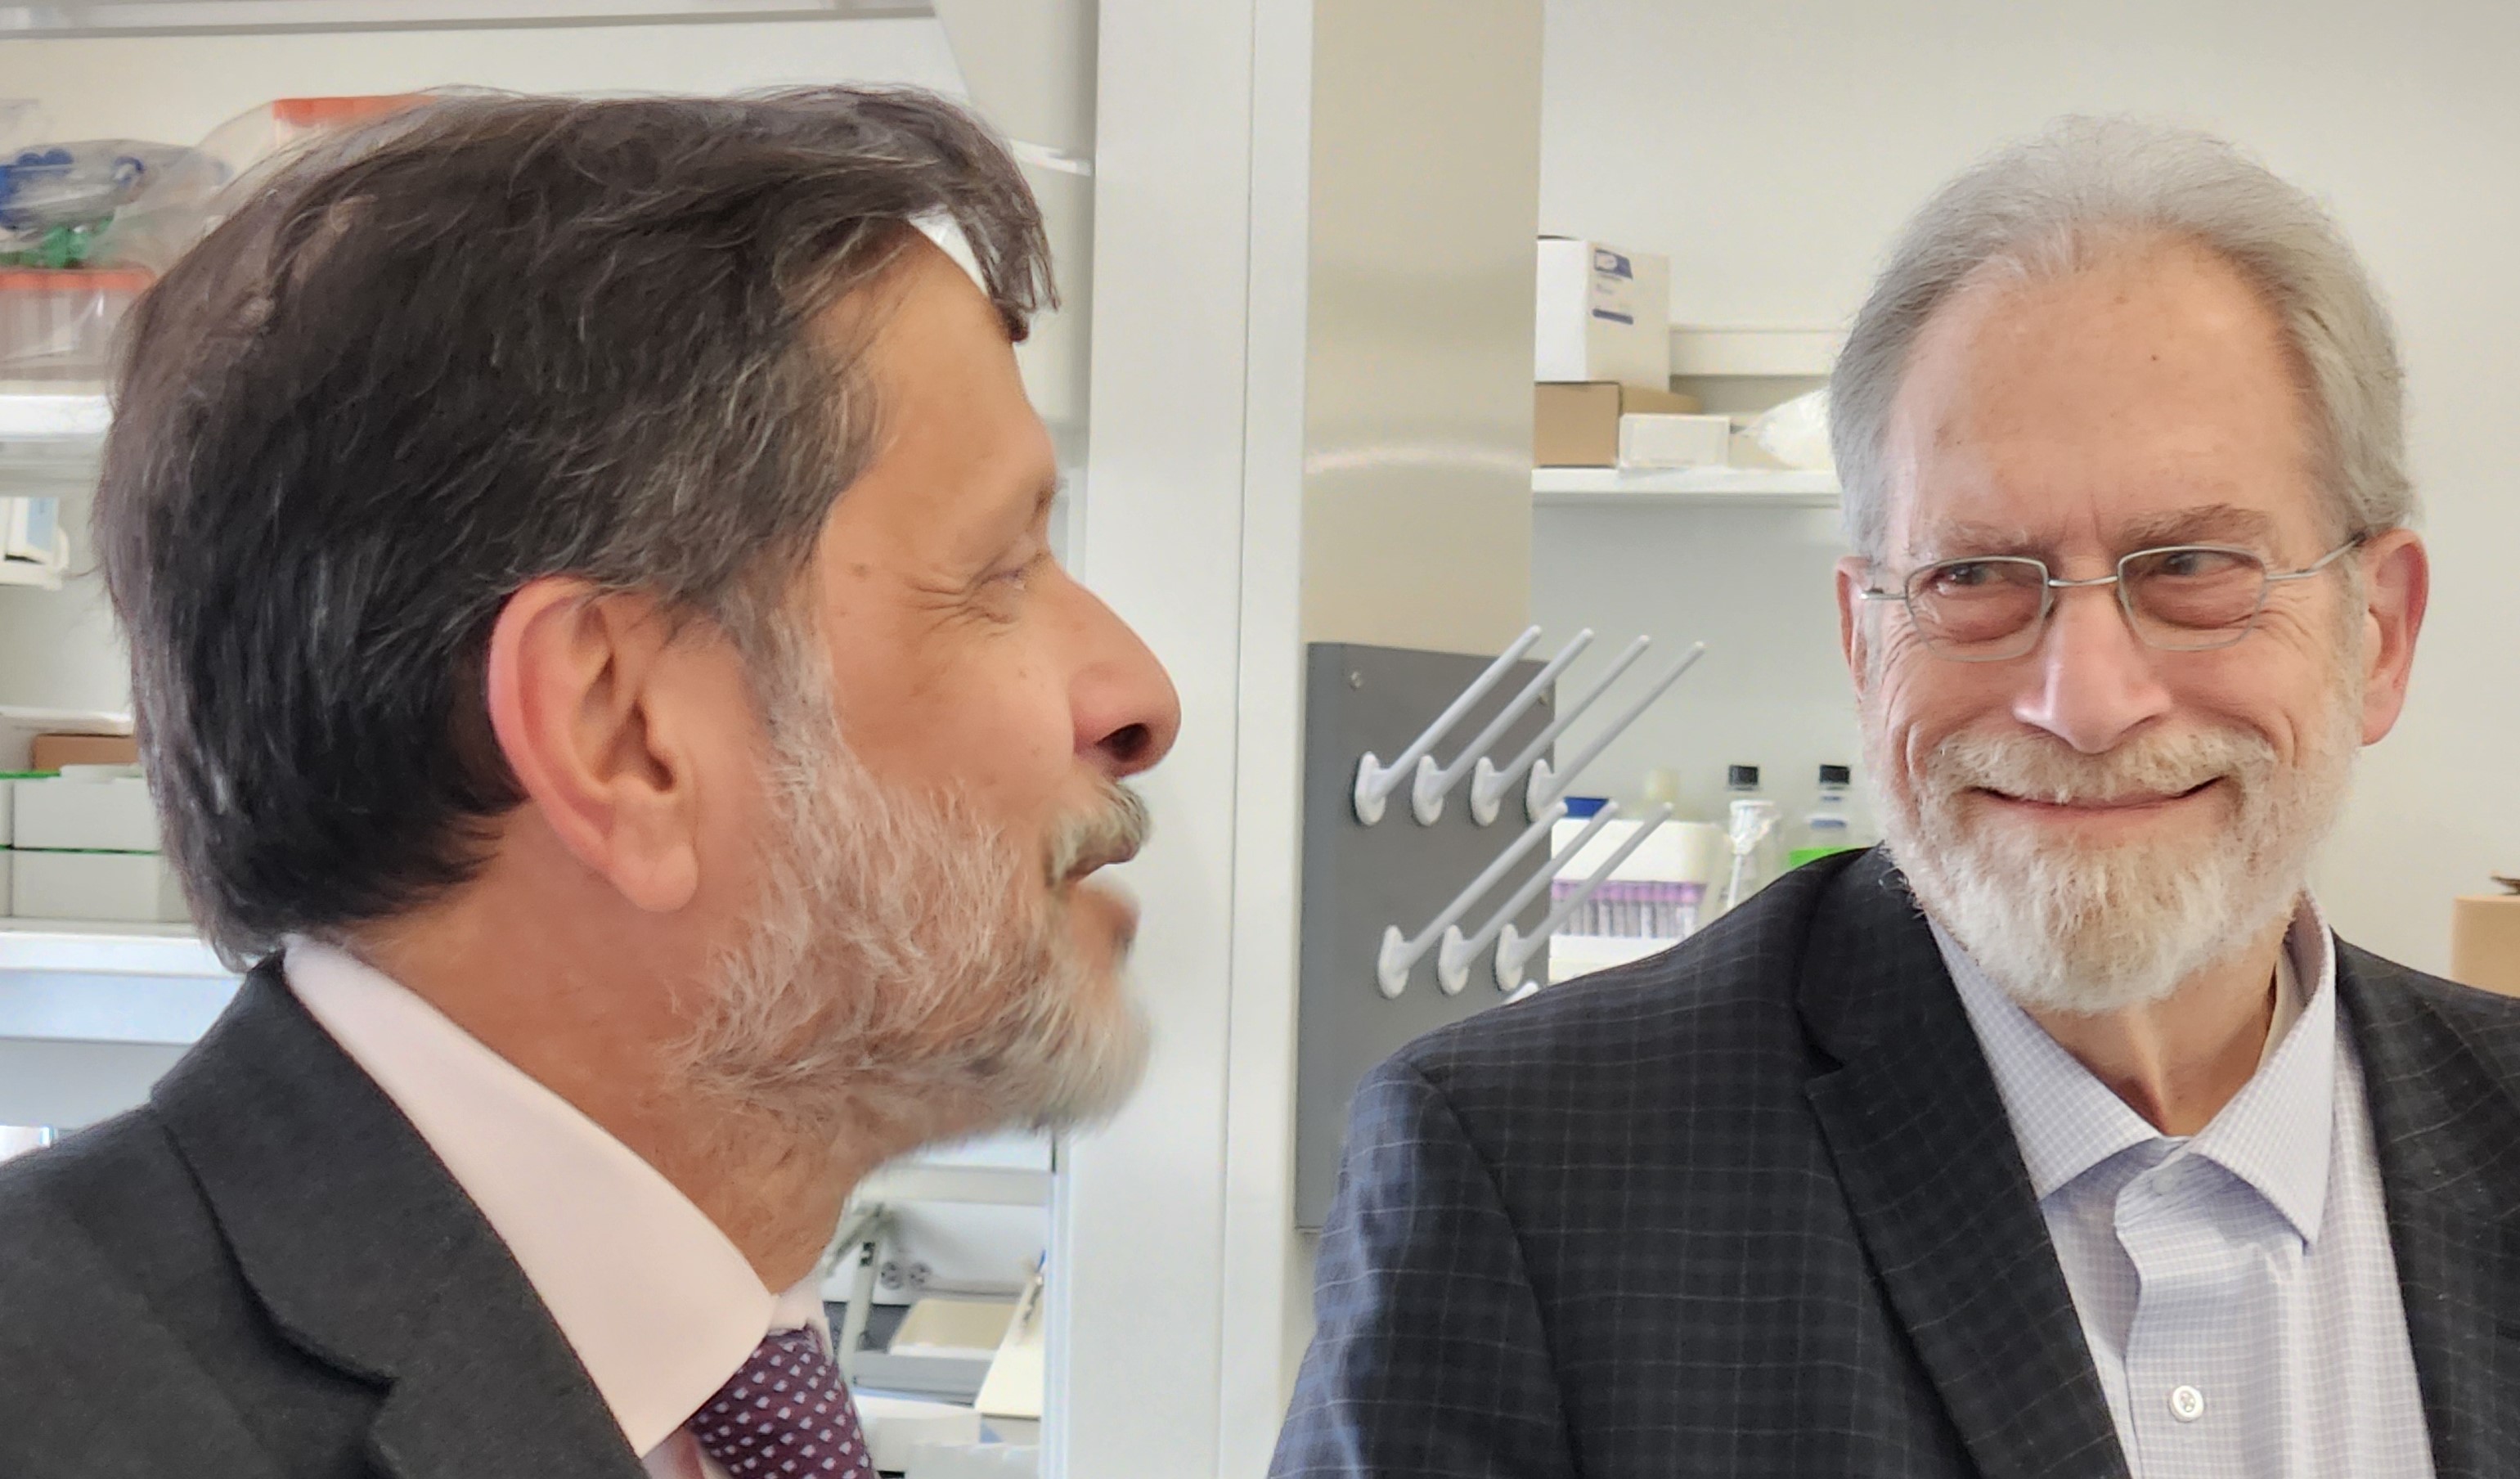 Jerry Colca of Cirius Therapeutics visits the liver institute